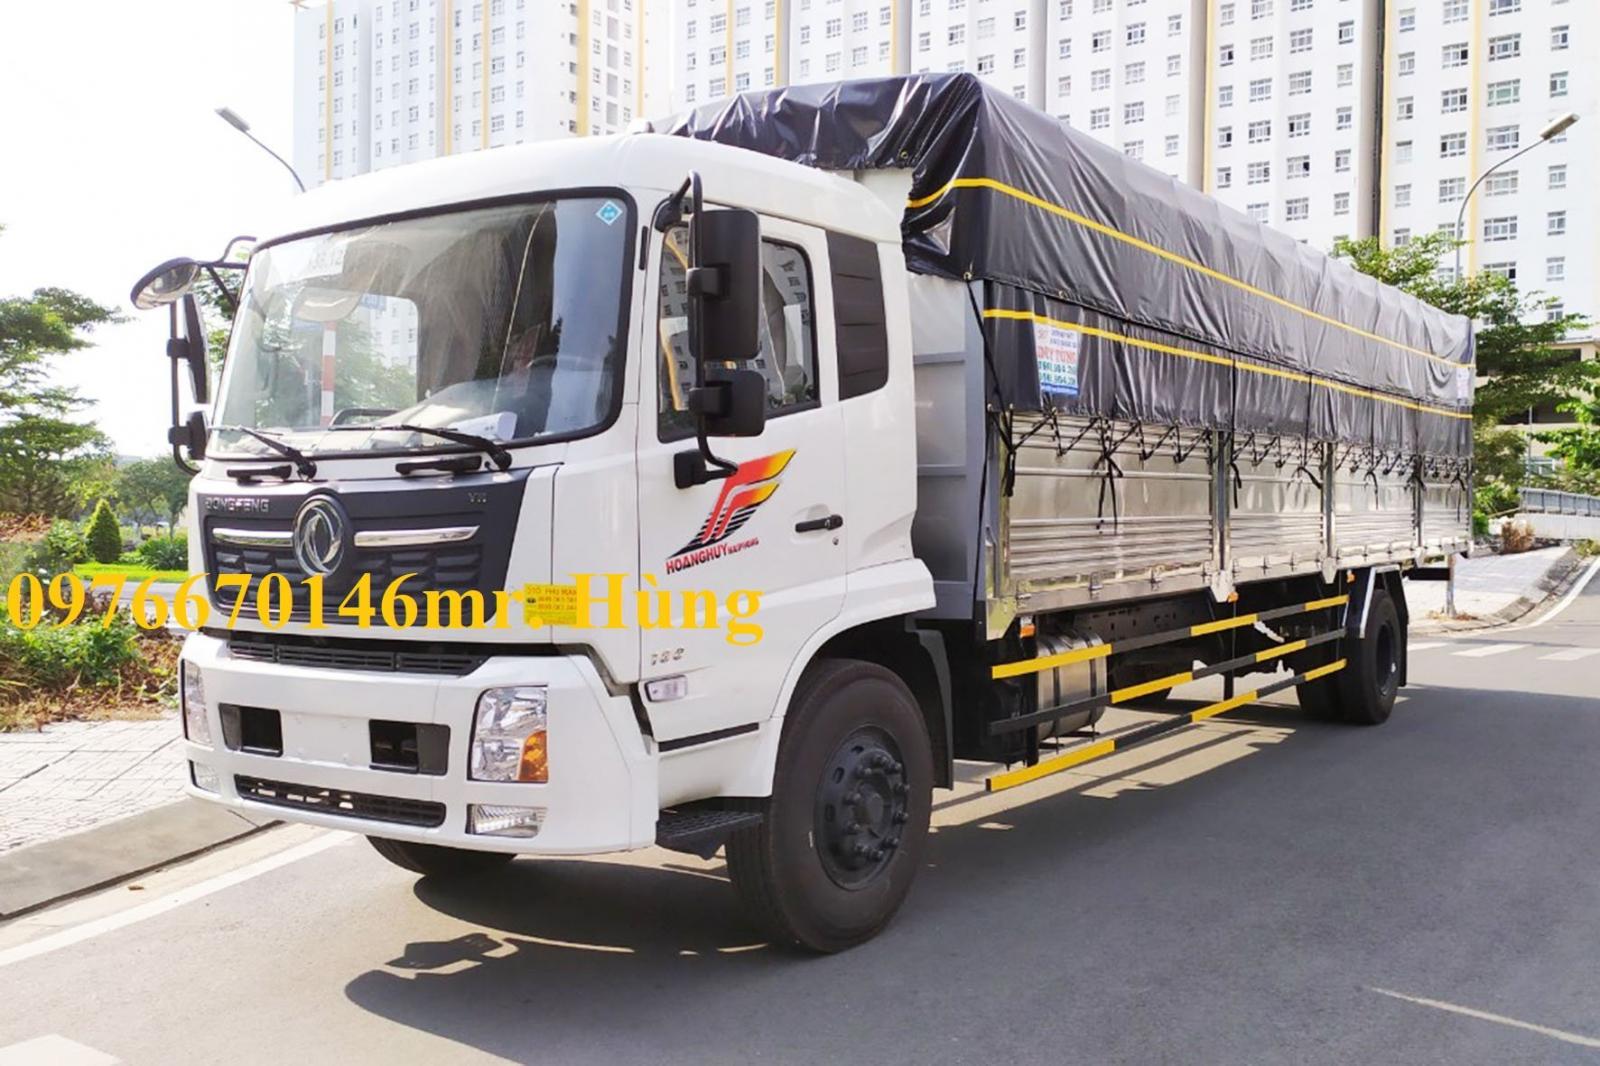 Xe tải 8 tấn Trung Quốc thùng dài giá rẻ